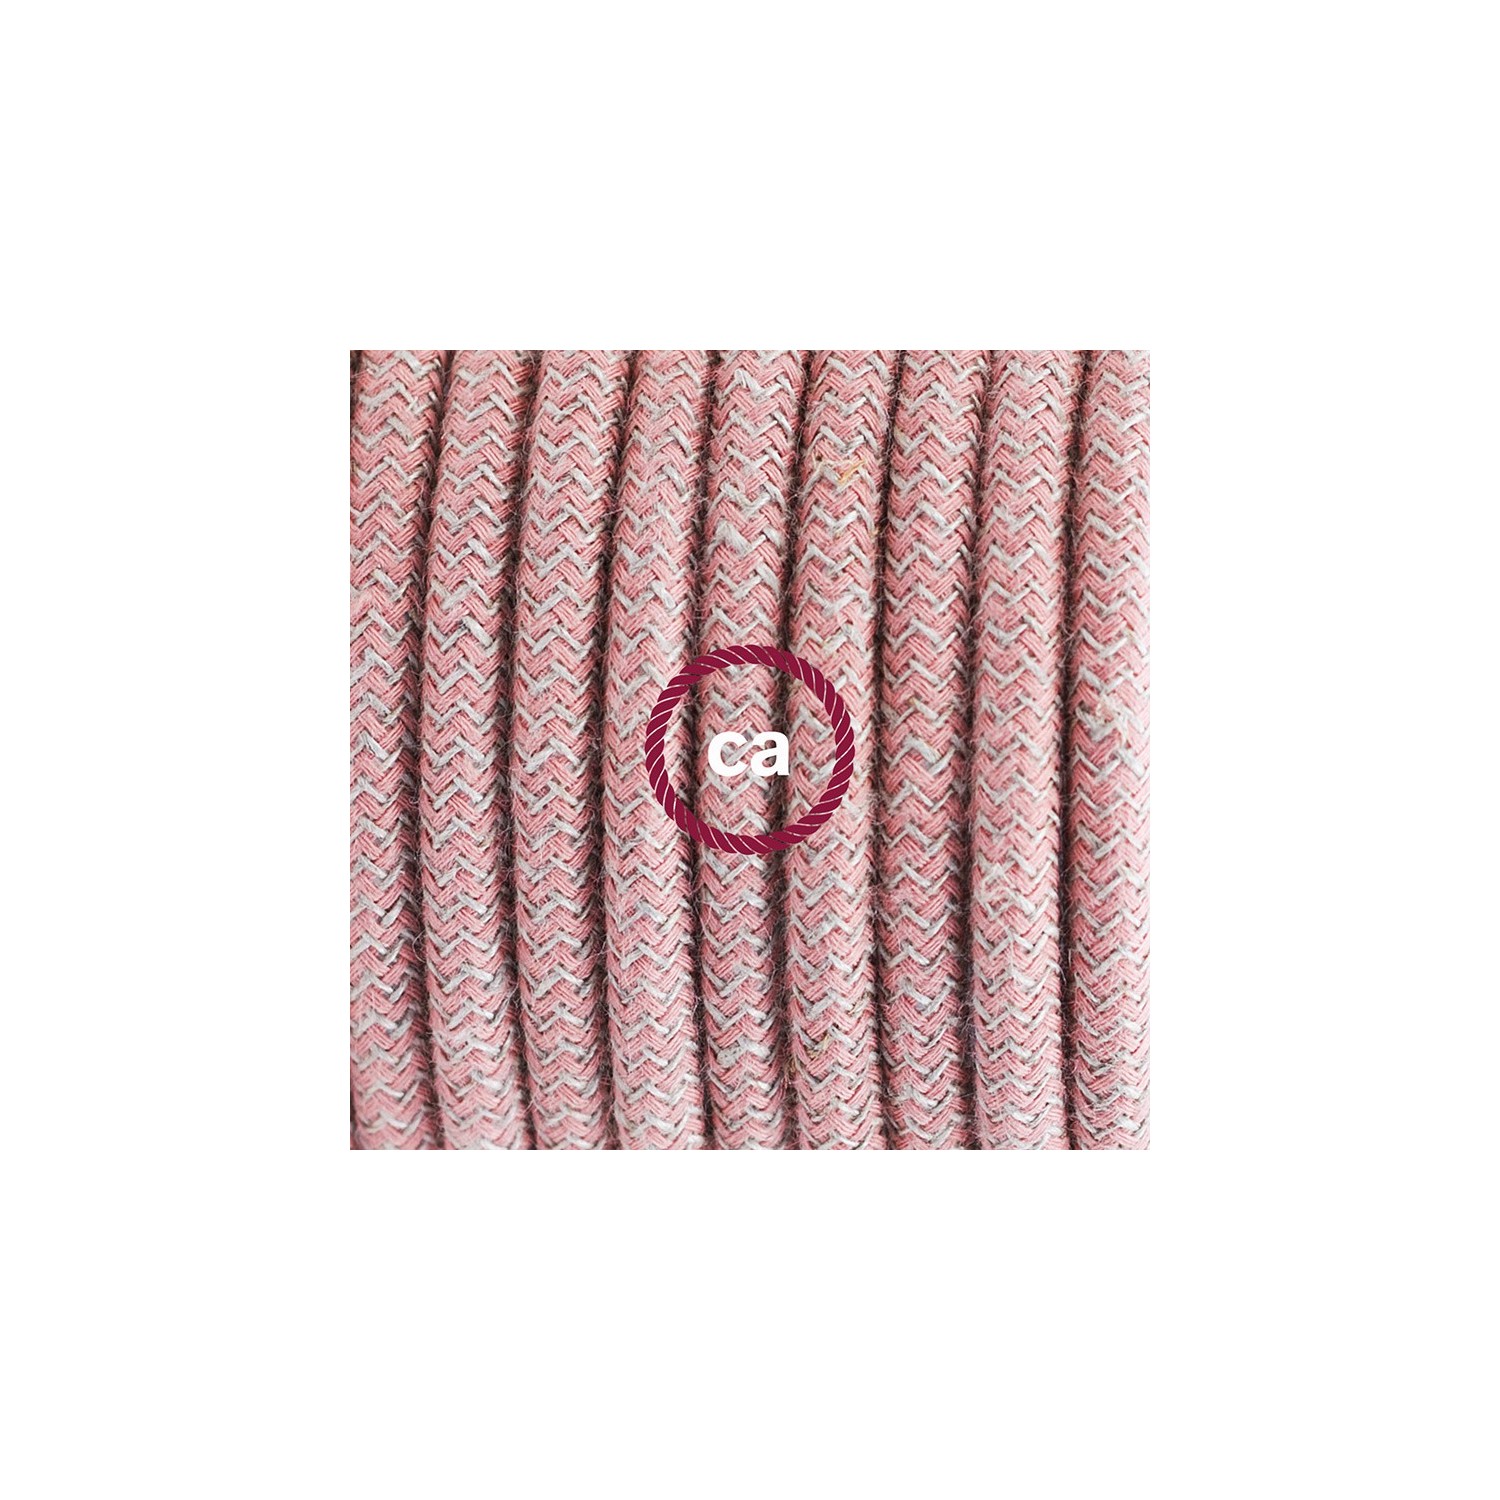 Komplet s stikalom, RD71 zigzag, rožnati naravni lan in bombaž 1,80 m. Izberite barvo vtikača in stikala.